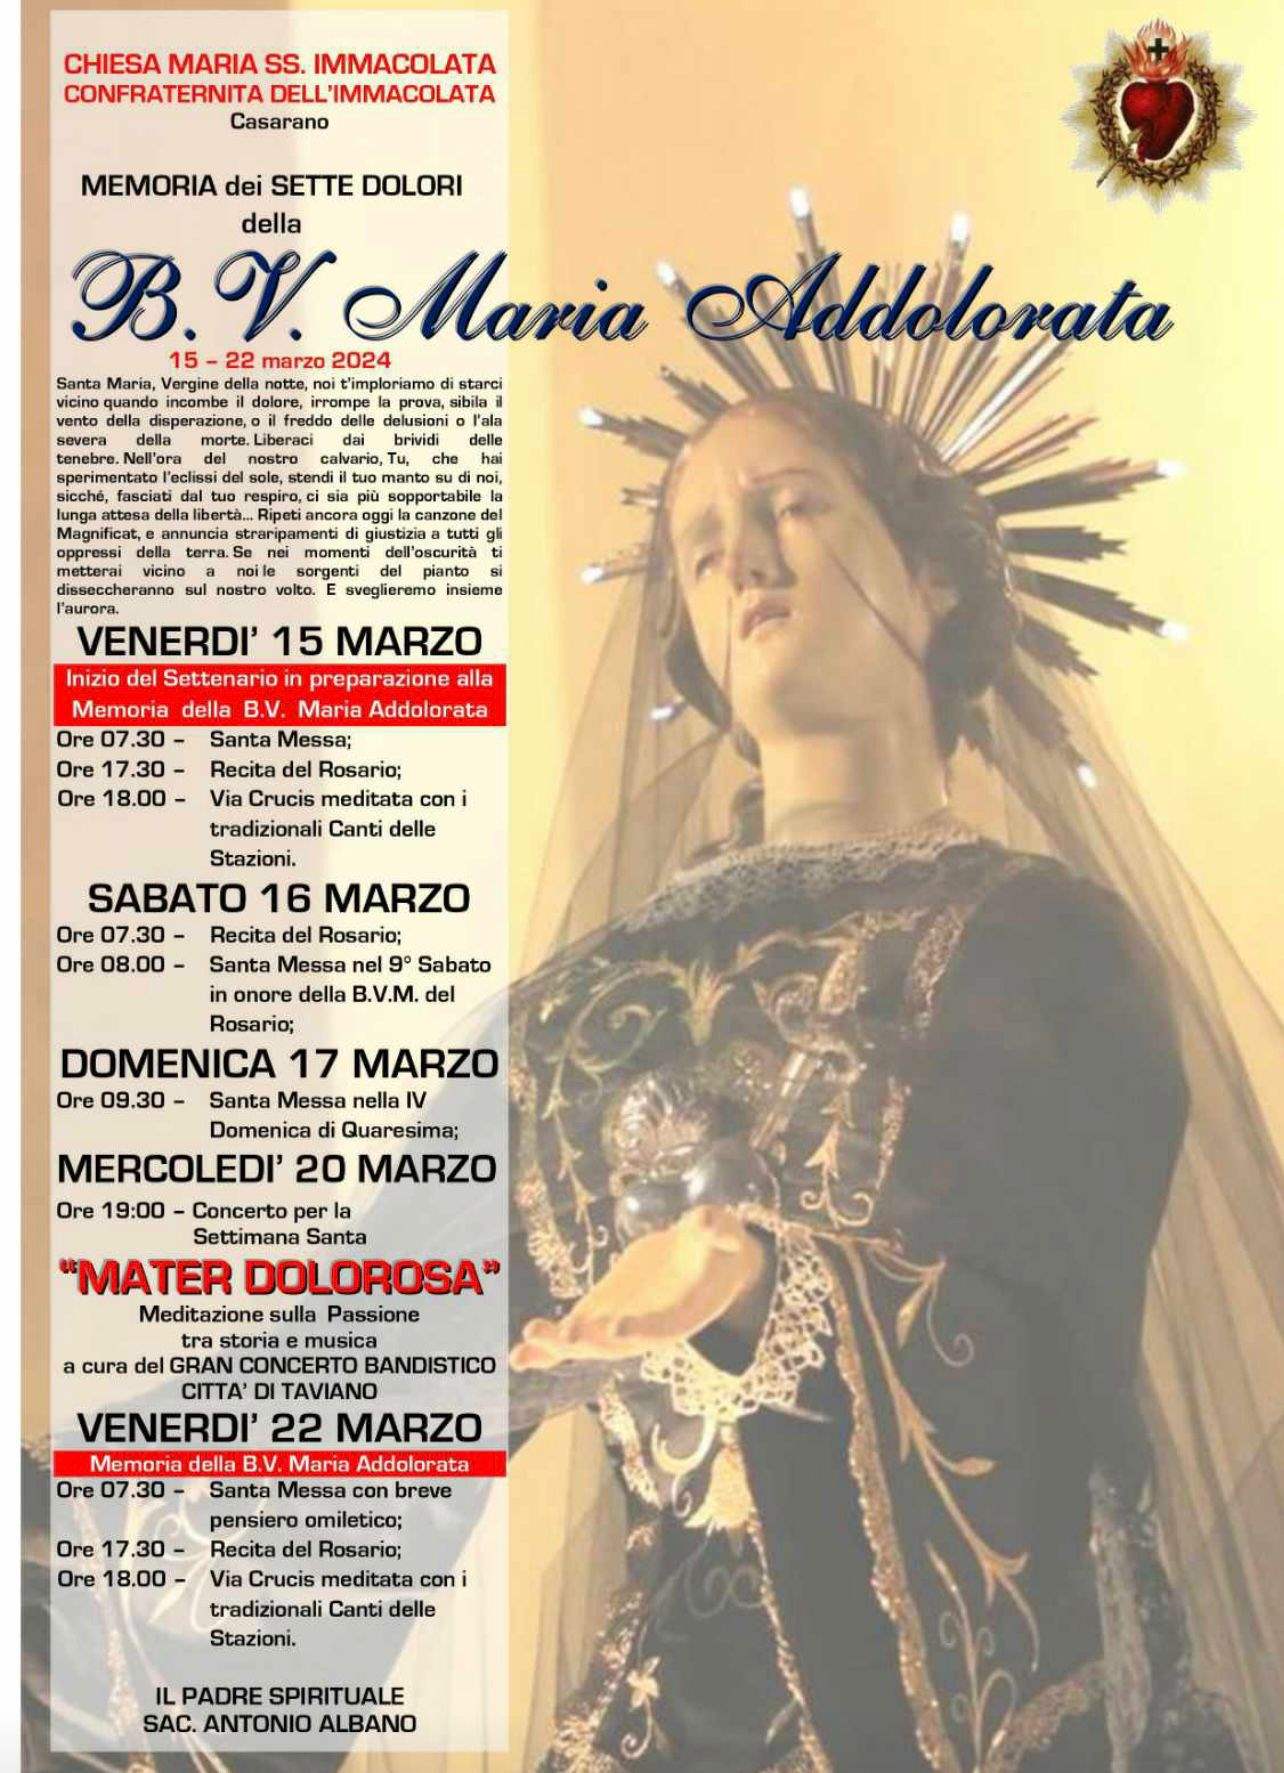 Memoria dei sette dolori della B.V. Maria Addolorata